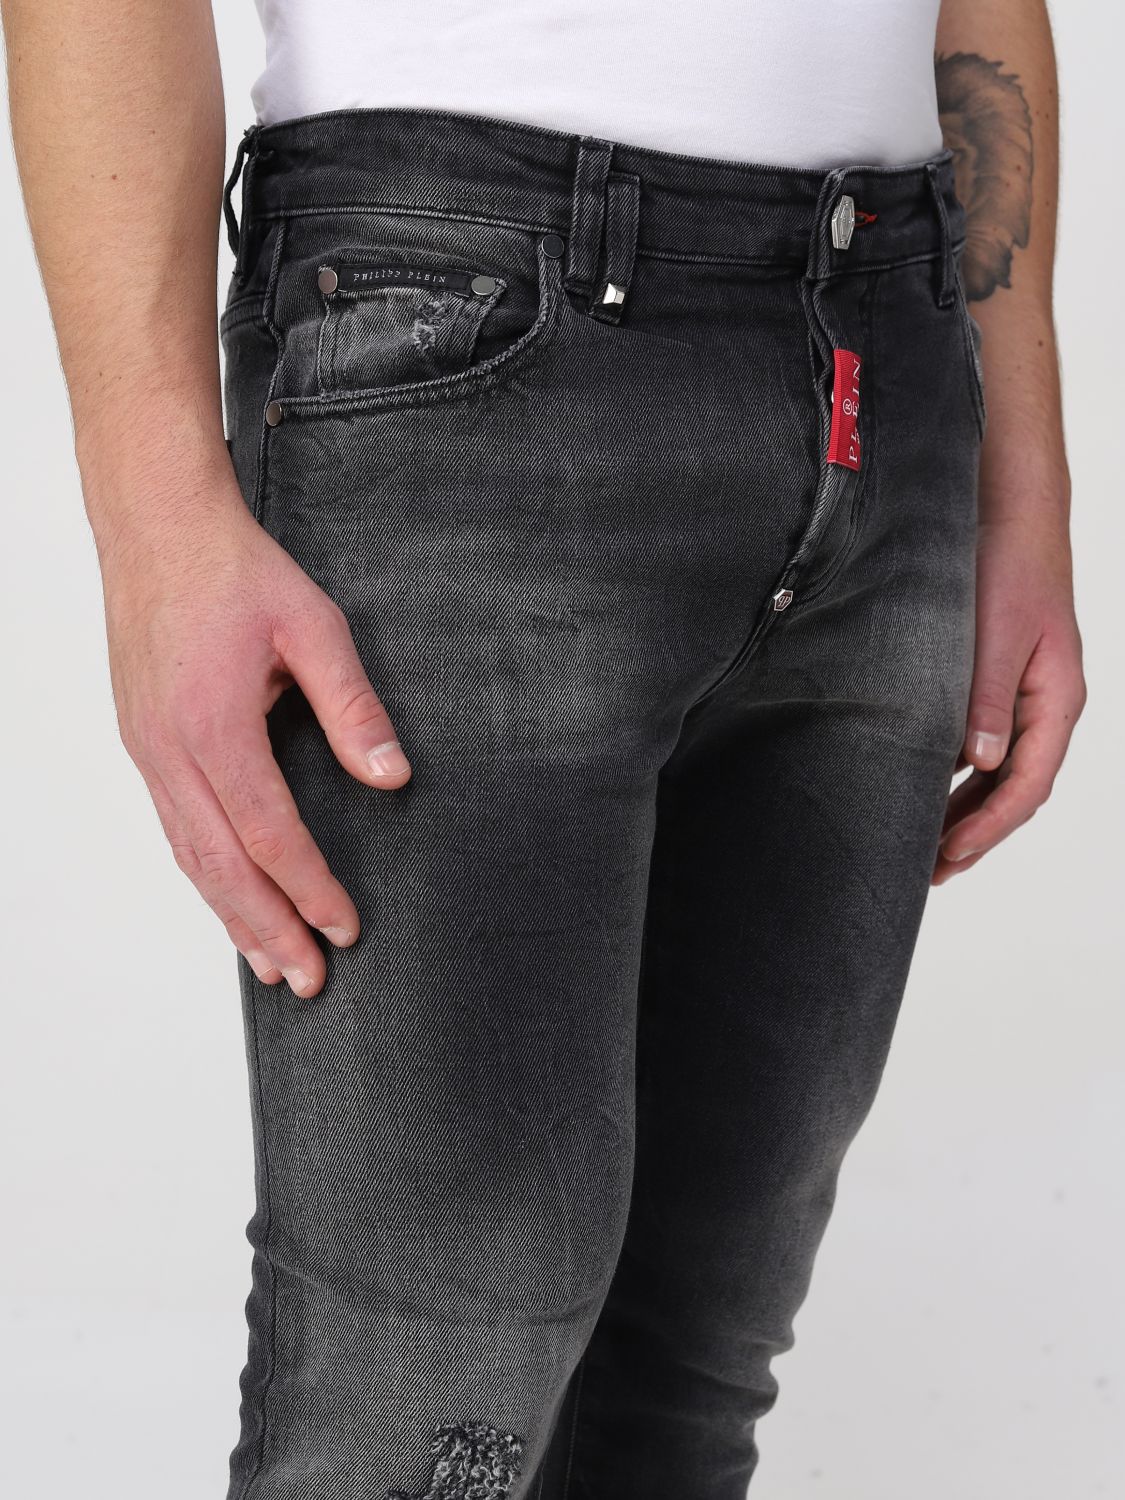 PHILIPP PLEIN: Jeans para hombre, Denim | Jeans Philipp FABCMDT3112PDE004N en línea en GIGLIO.COM